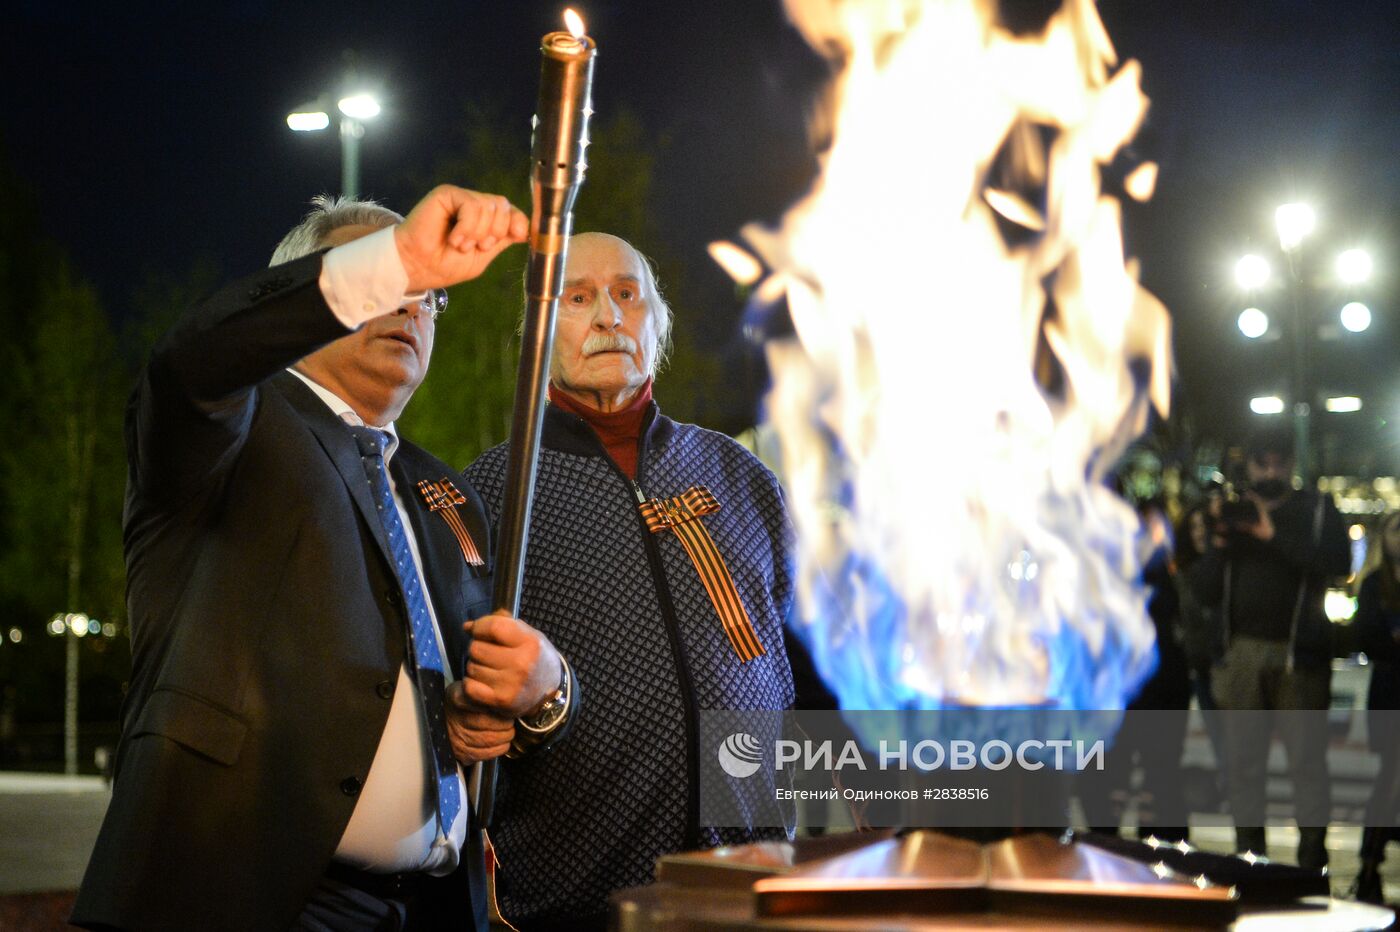 Профилактика горелки Вечного огня в Александровском саду